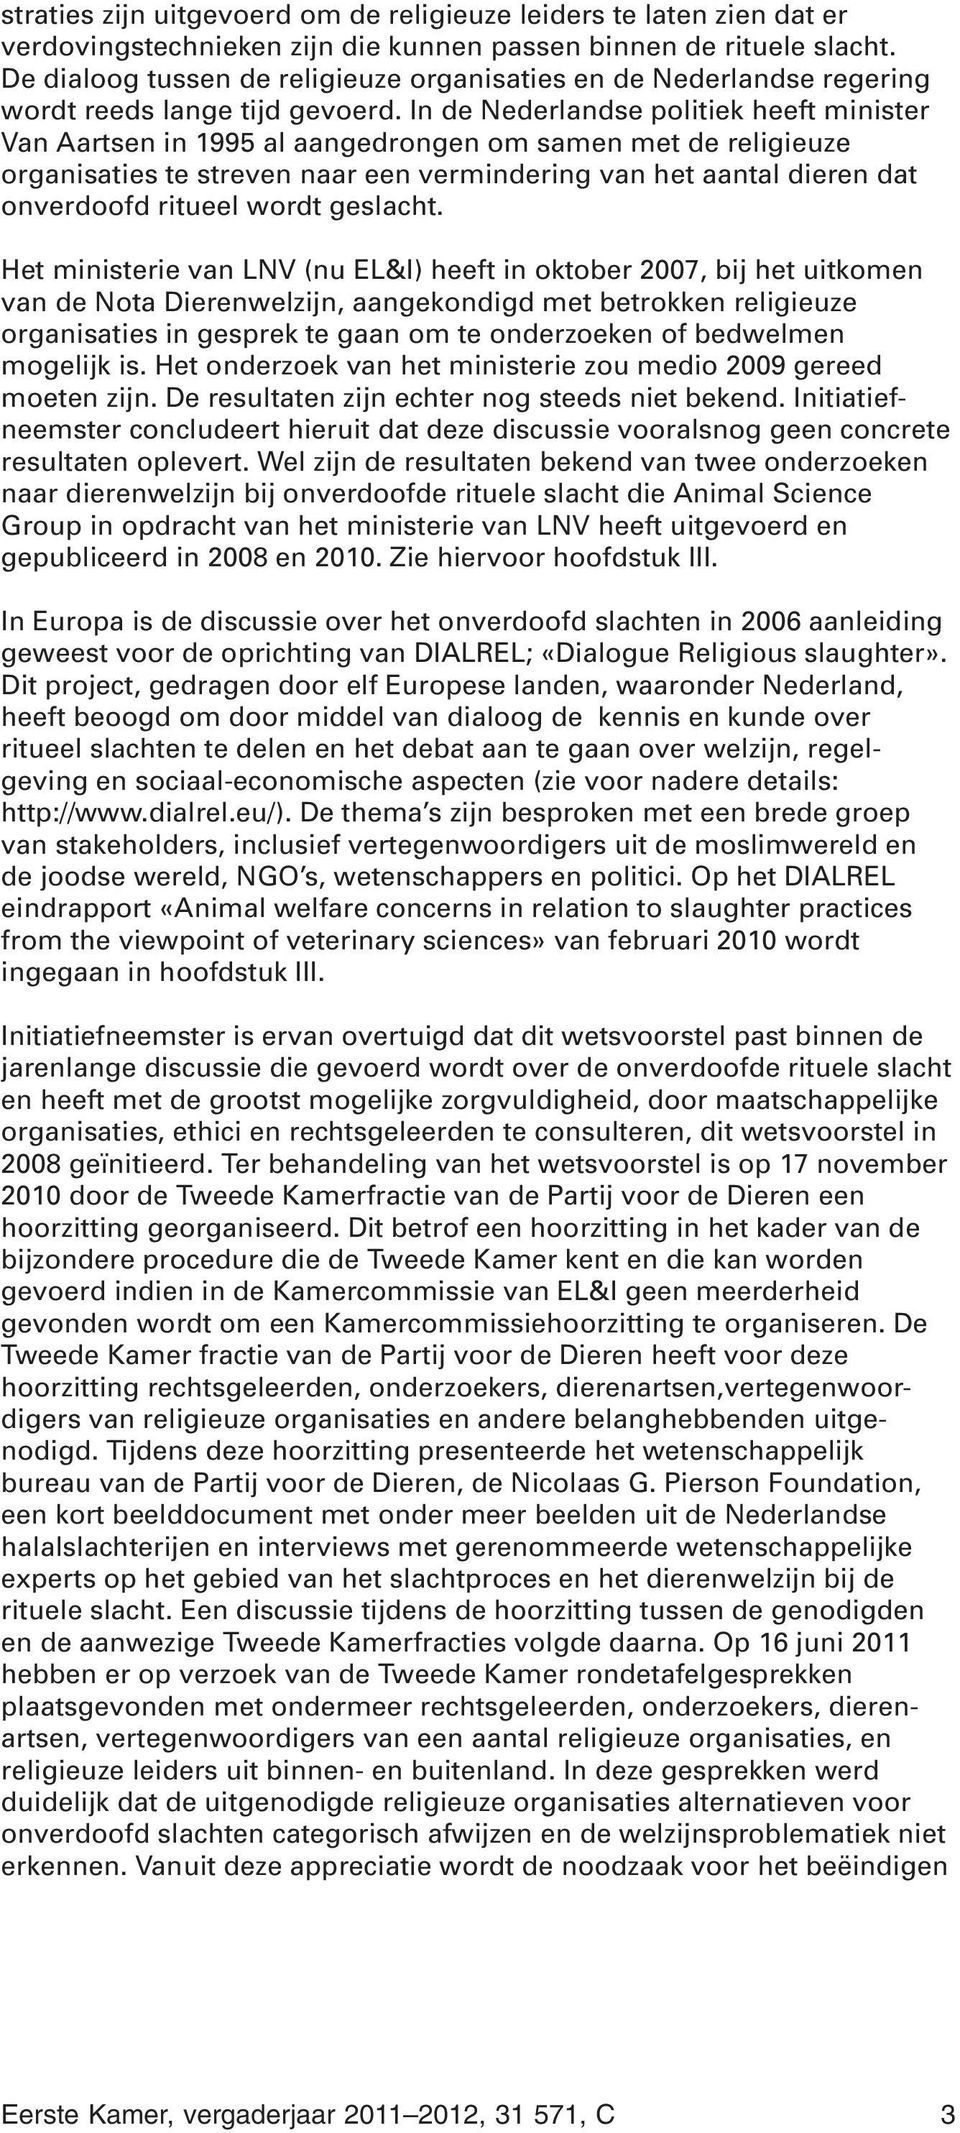 In de Nederlandse politiek heeft minister Van Aartsen in 995 al aangedrongen om samen met de religieuze organisaties te streven naar een vermindering van het aantal dieren dat onverdoofd ritueel